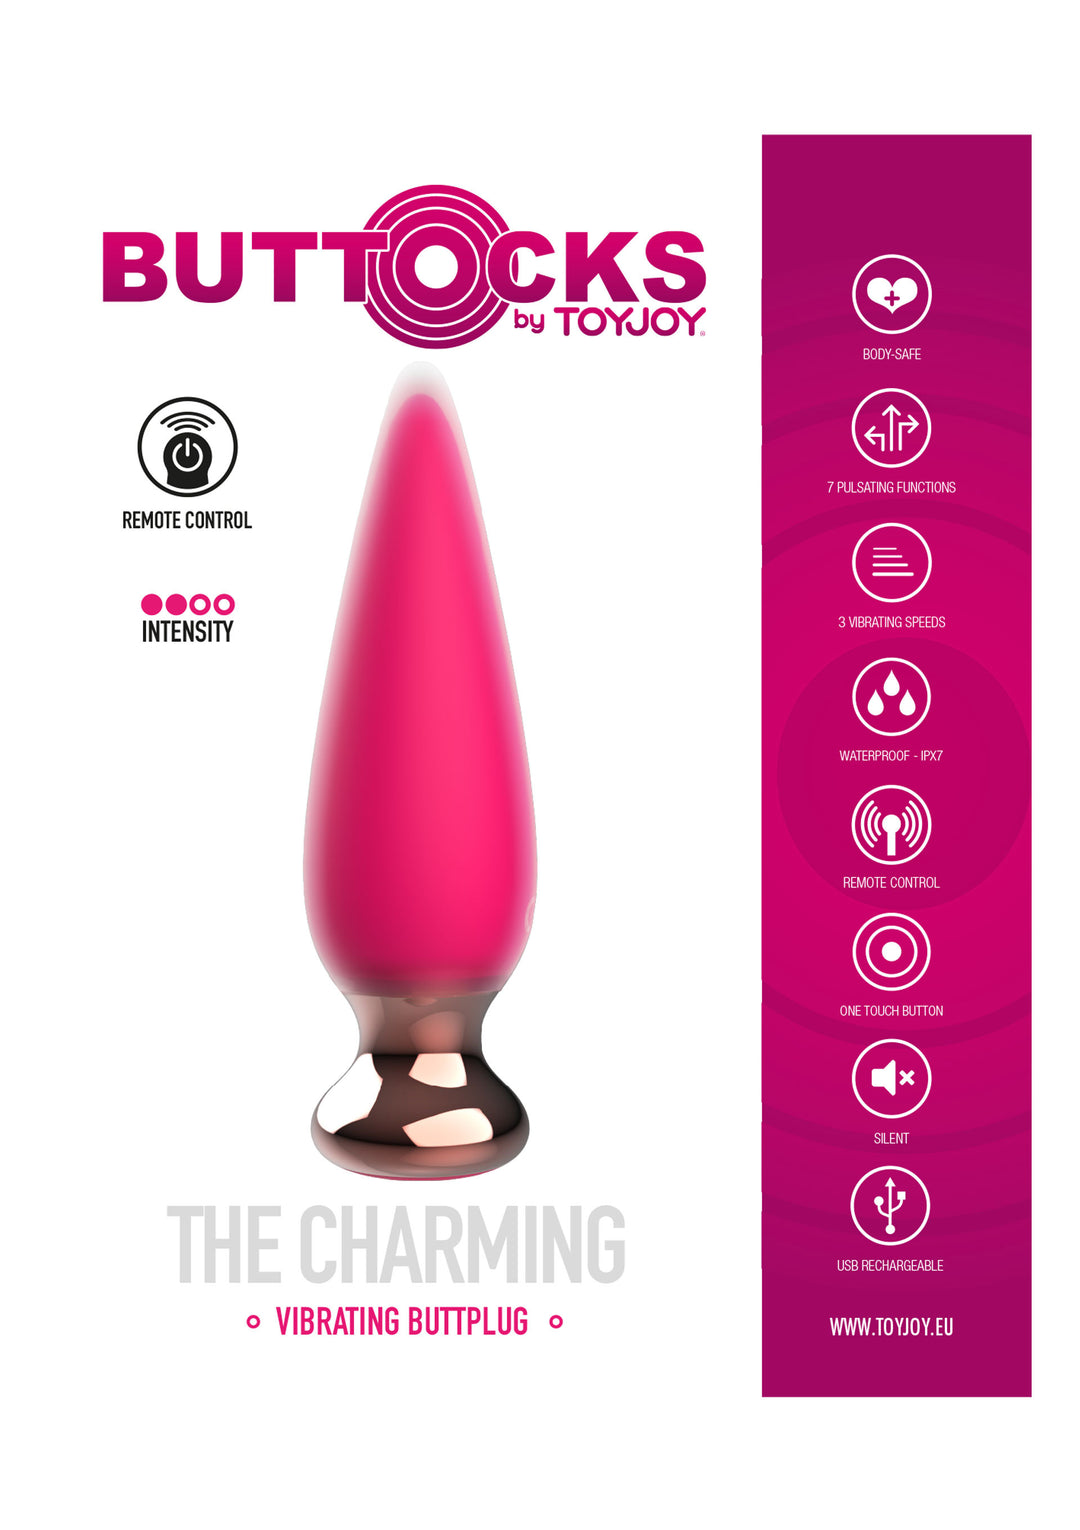 The Charming Buttplug mini anal vibrator